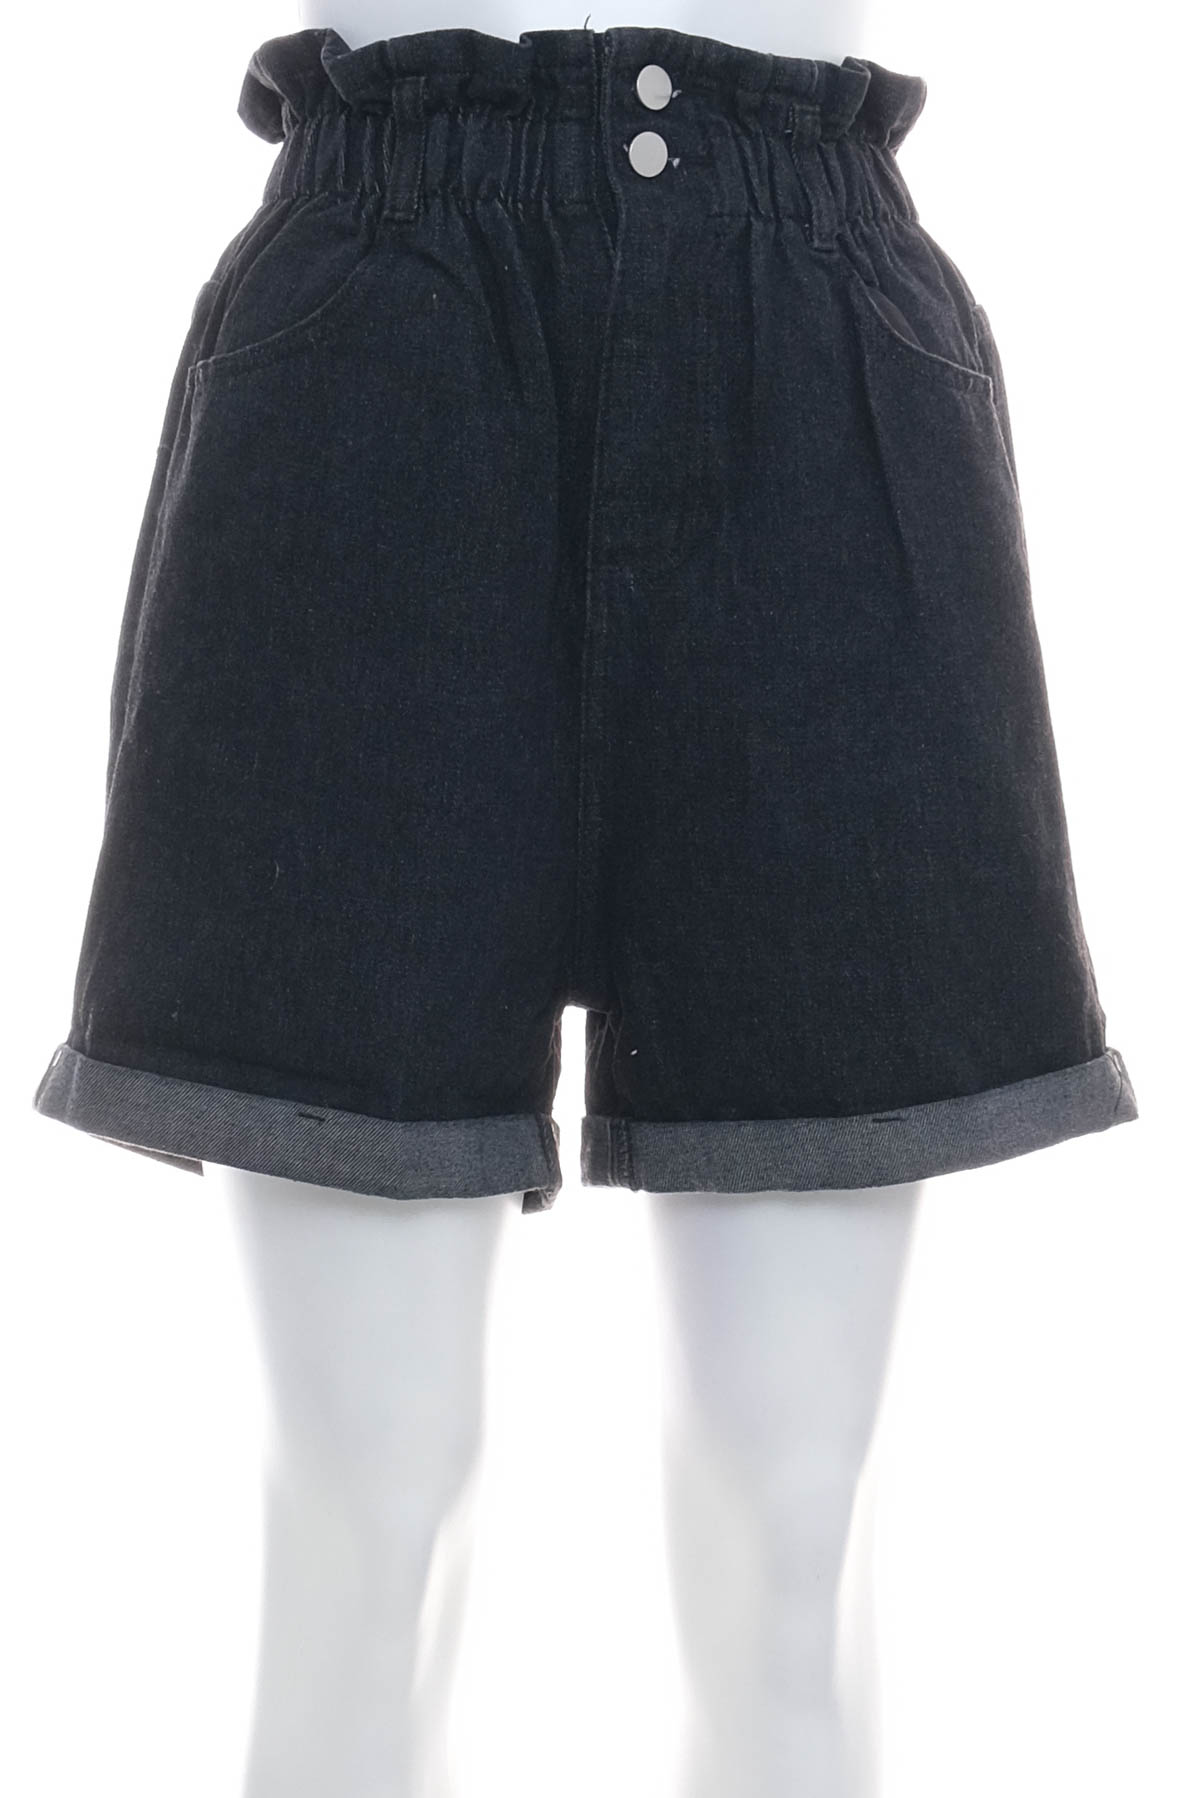 Krótkie spodnie damskie - MINX & MOSS - 0